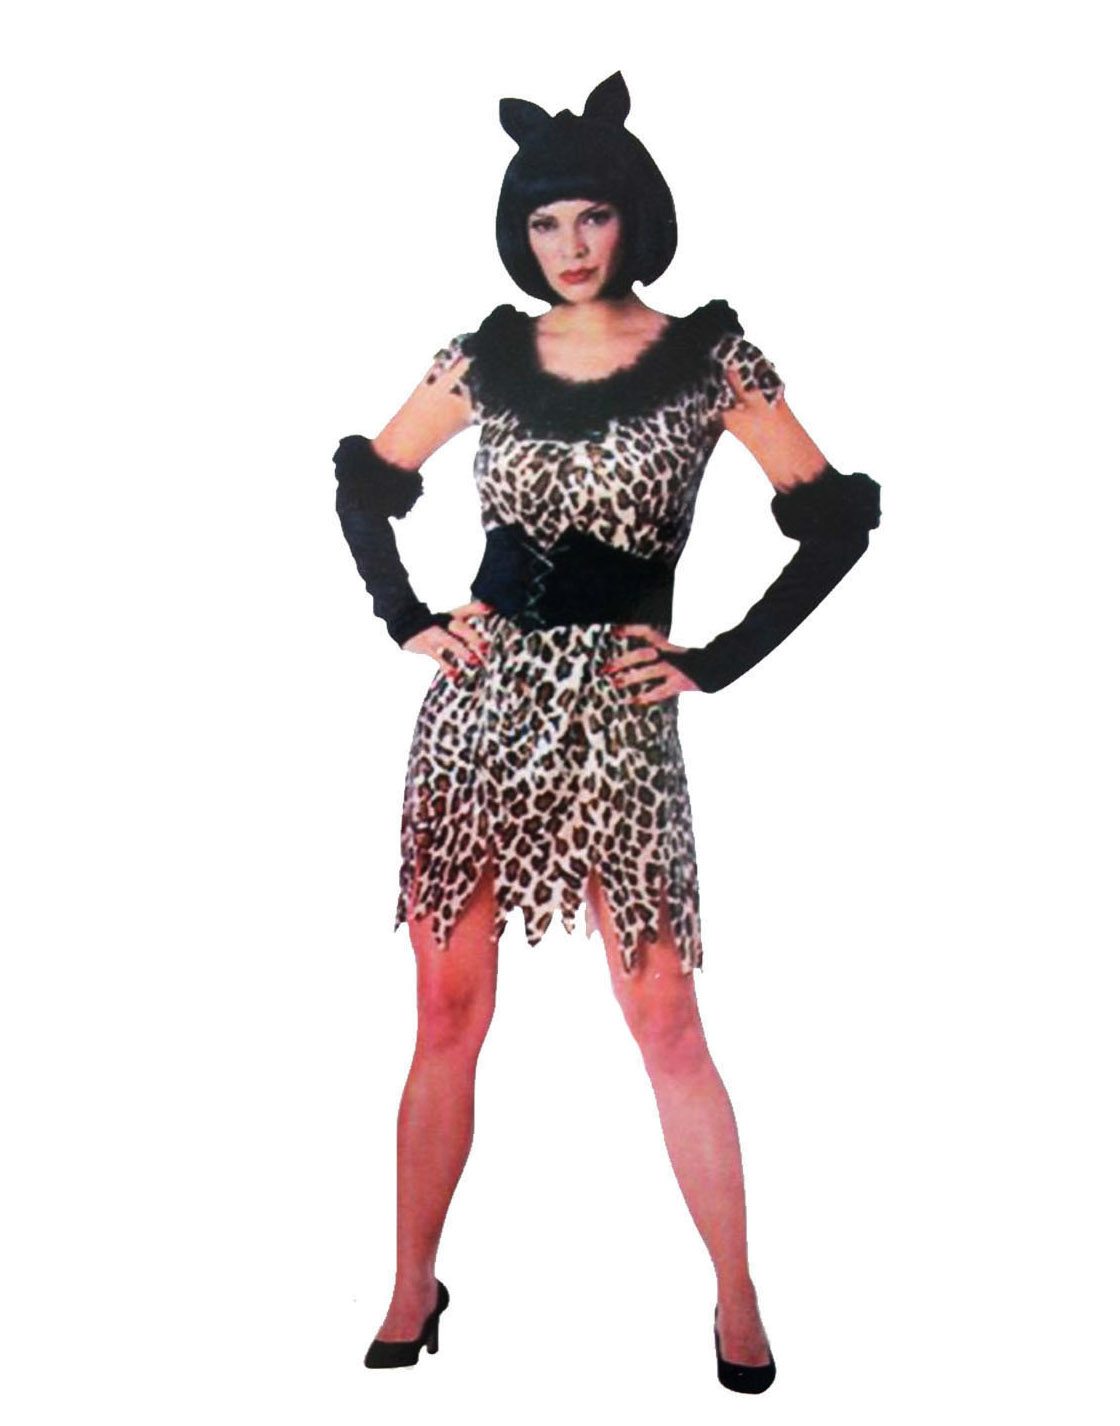 CLZ192 Yetişkin Bayan Leopar Kostümü  - Kedi Kız Kostümü - Taş Devri Kostümü (4172)